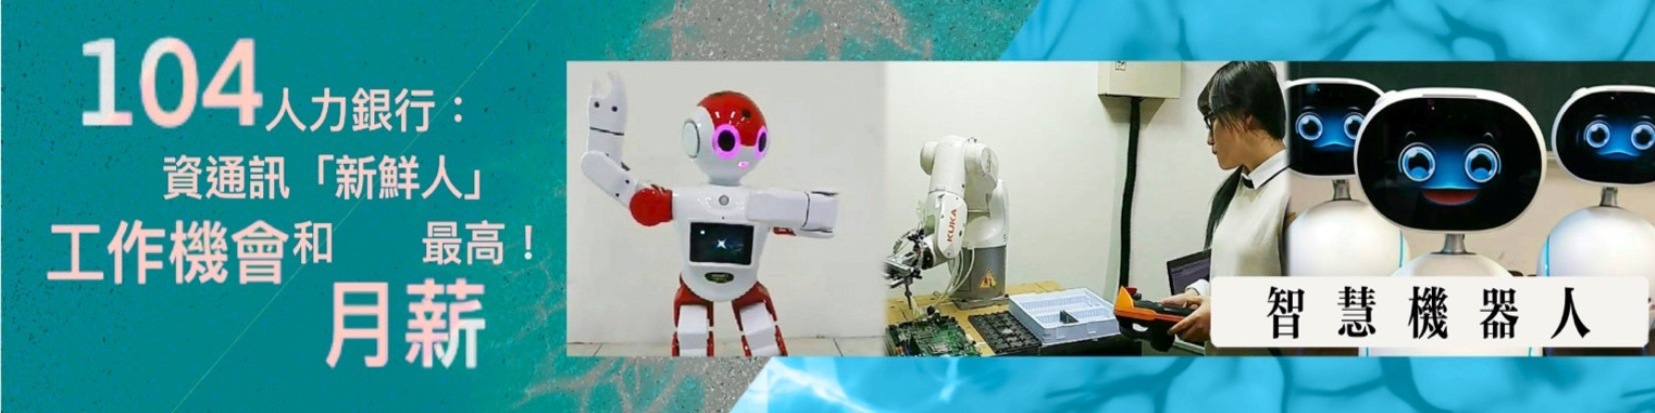 人工智慧與機器人